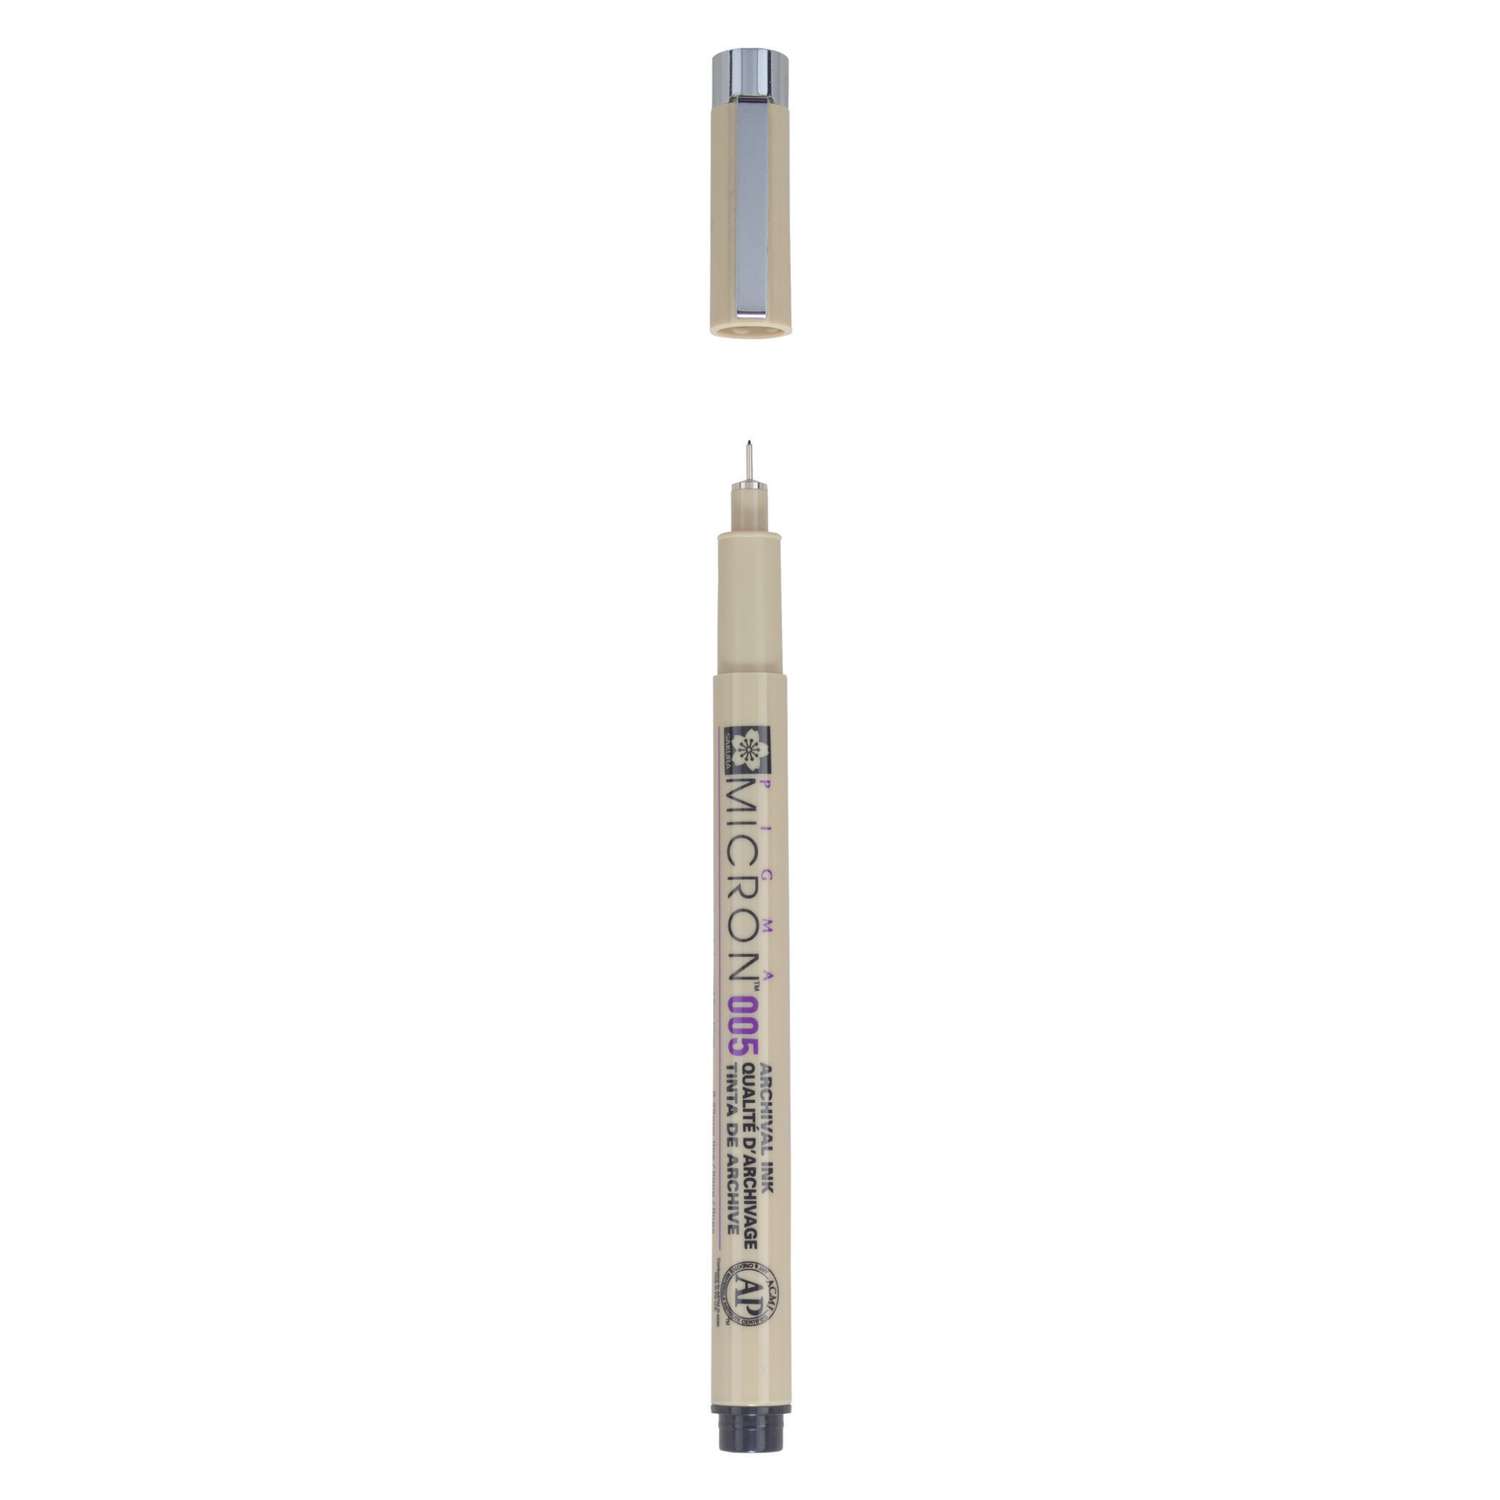 Crayons stylos d'encre d'archival ens. couleur (6) no.005 Pigma